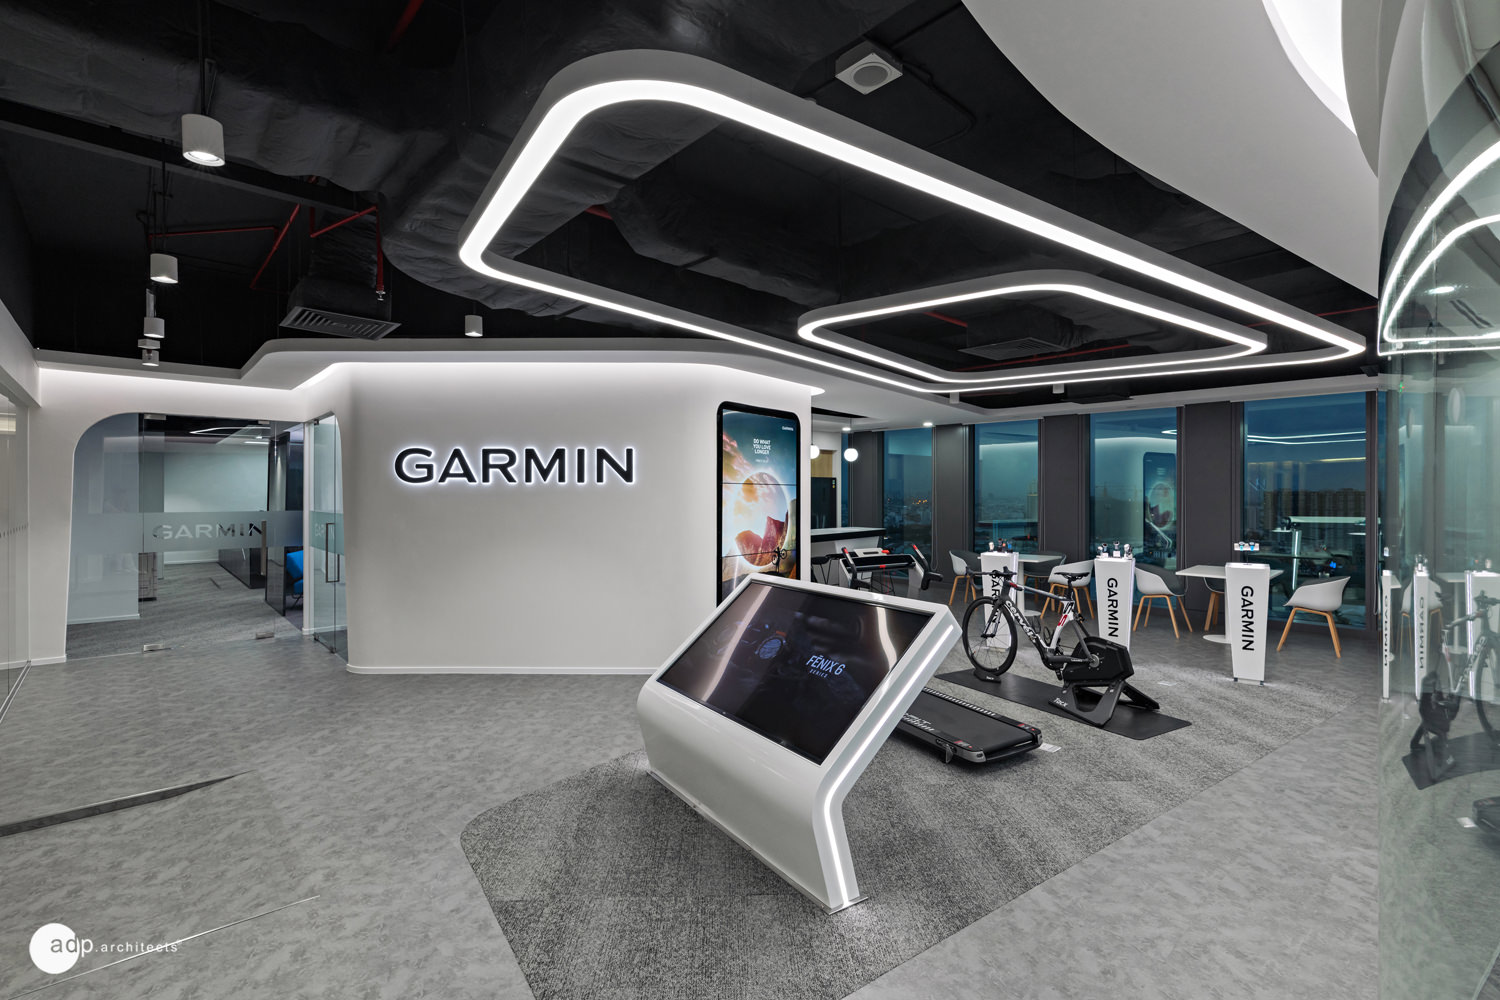 Văn phòng Garmin:
Văn phòng Garmin nổi tiếng với thiết kế hiện đại và sáng tạo, cung cấp một không gian làm việc thoải mái và tiện nghi cho nhân viên. Hãy đến tham quan để trải nghiệm không gian làm việc đầy sáng tạo này.